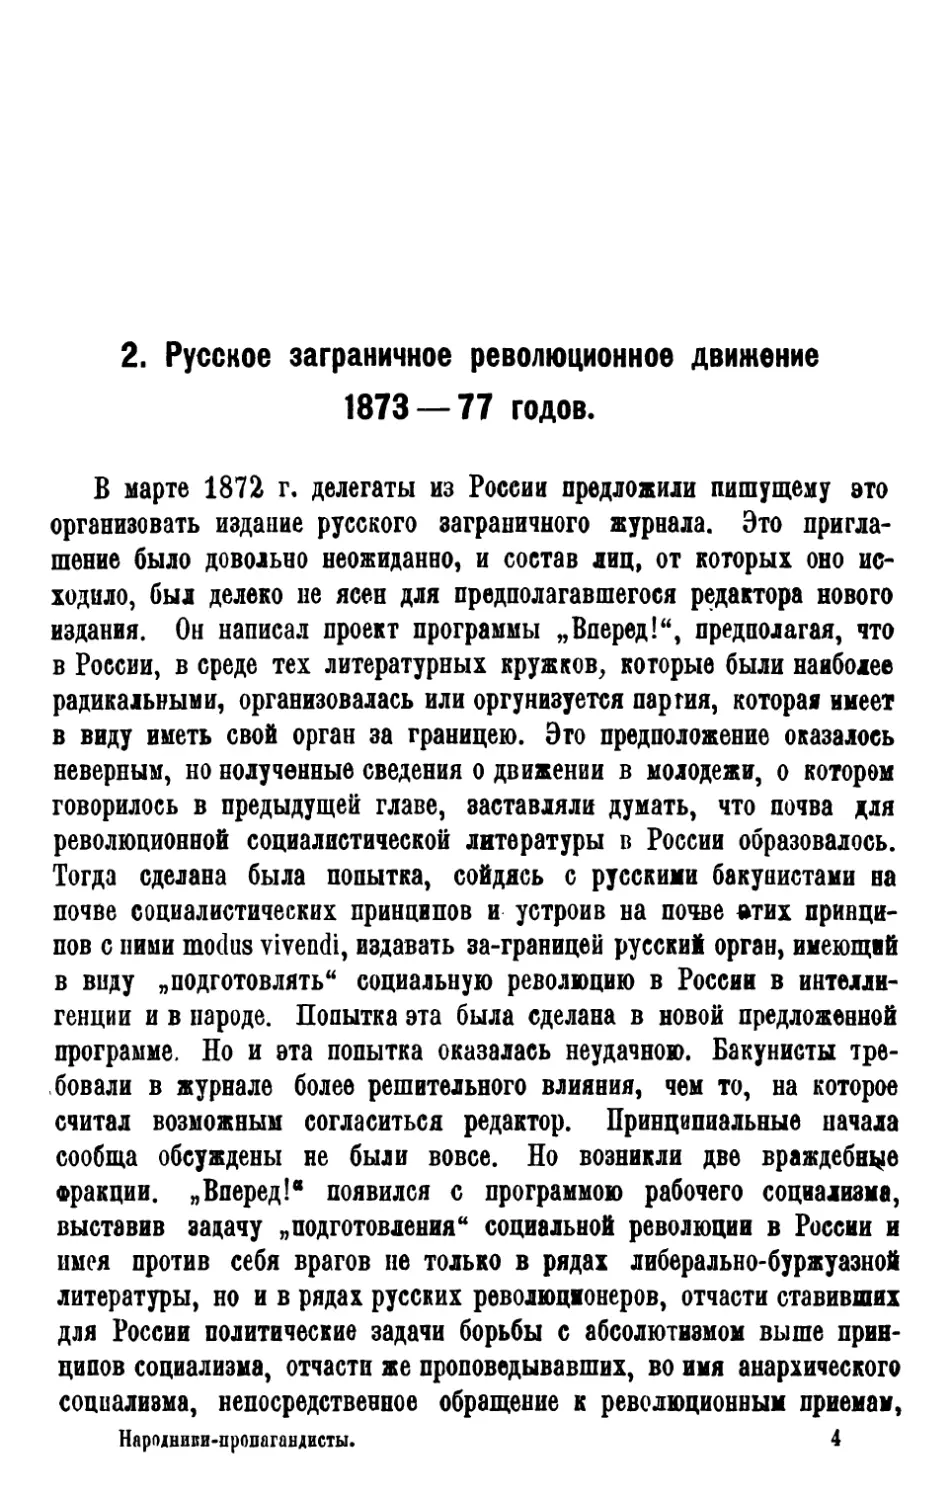 2. Русское заграничное революционн. движен. 1873—77 г.г.